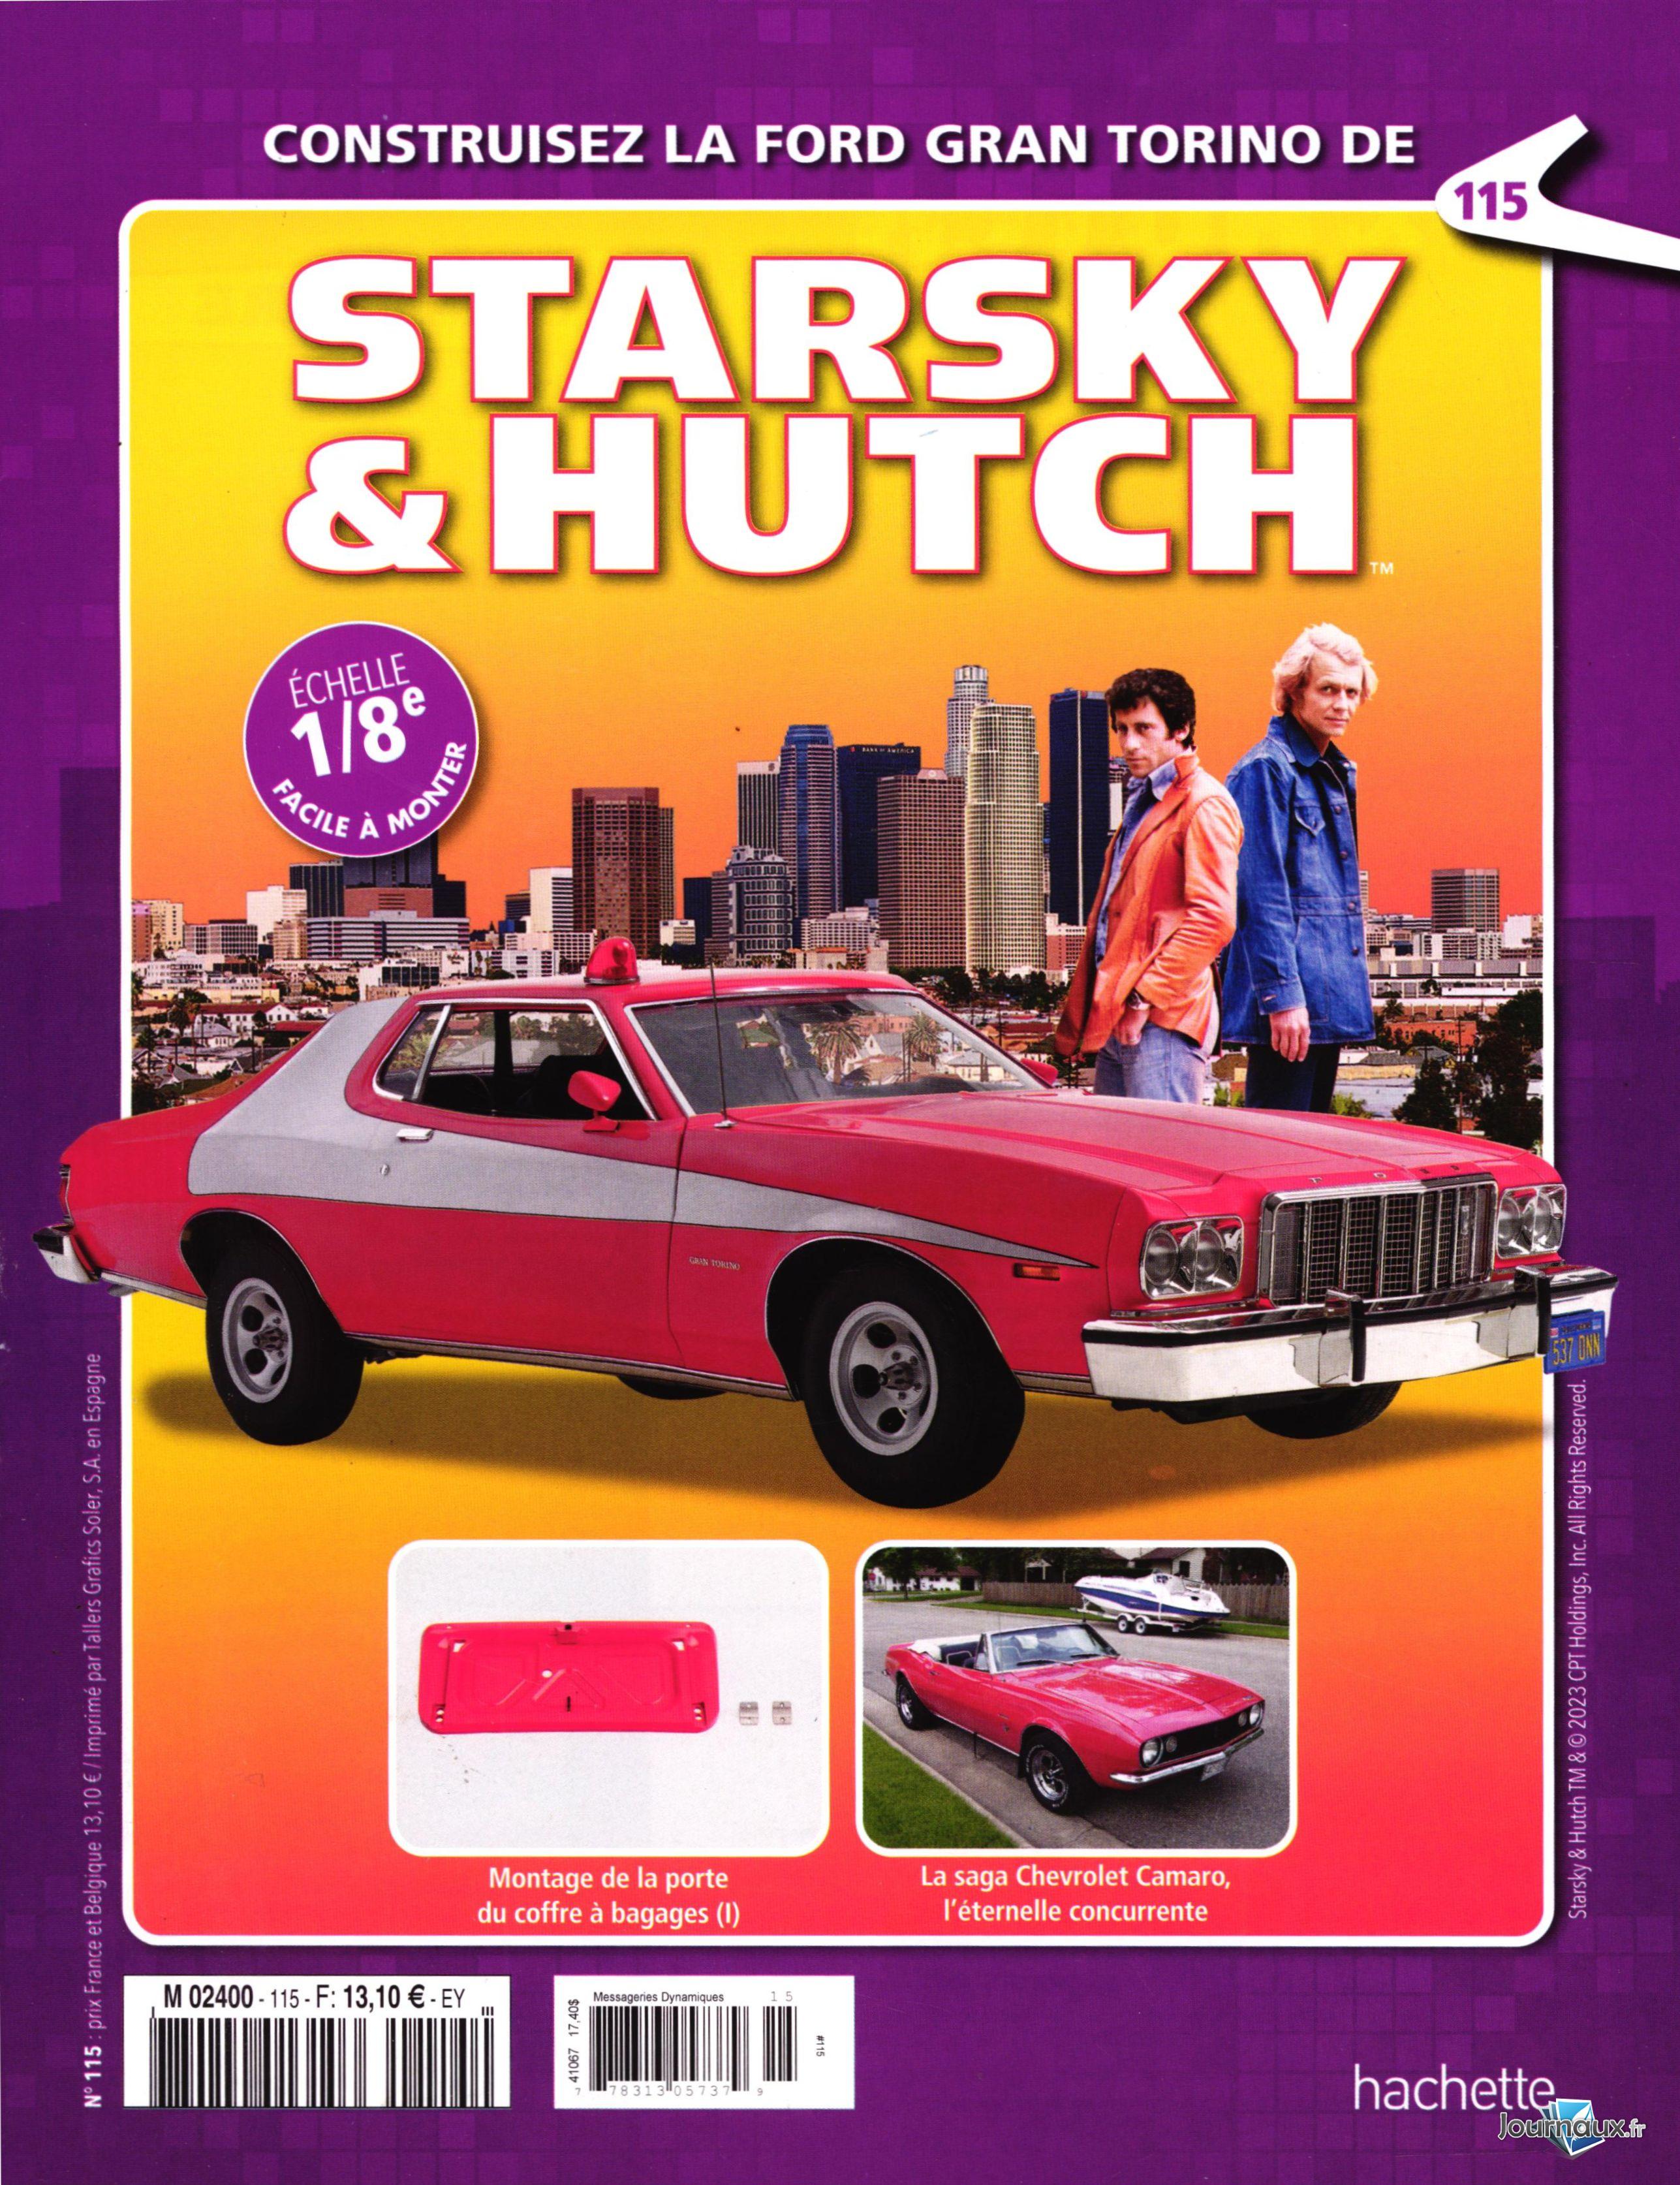 Une réplique de la Ford Gran Torino de Starsky et Hutch aux enchères